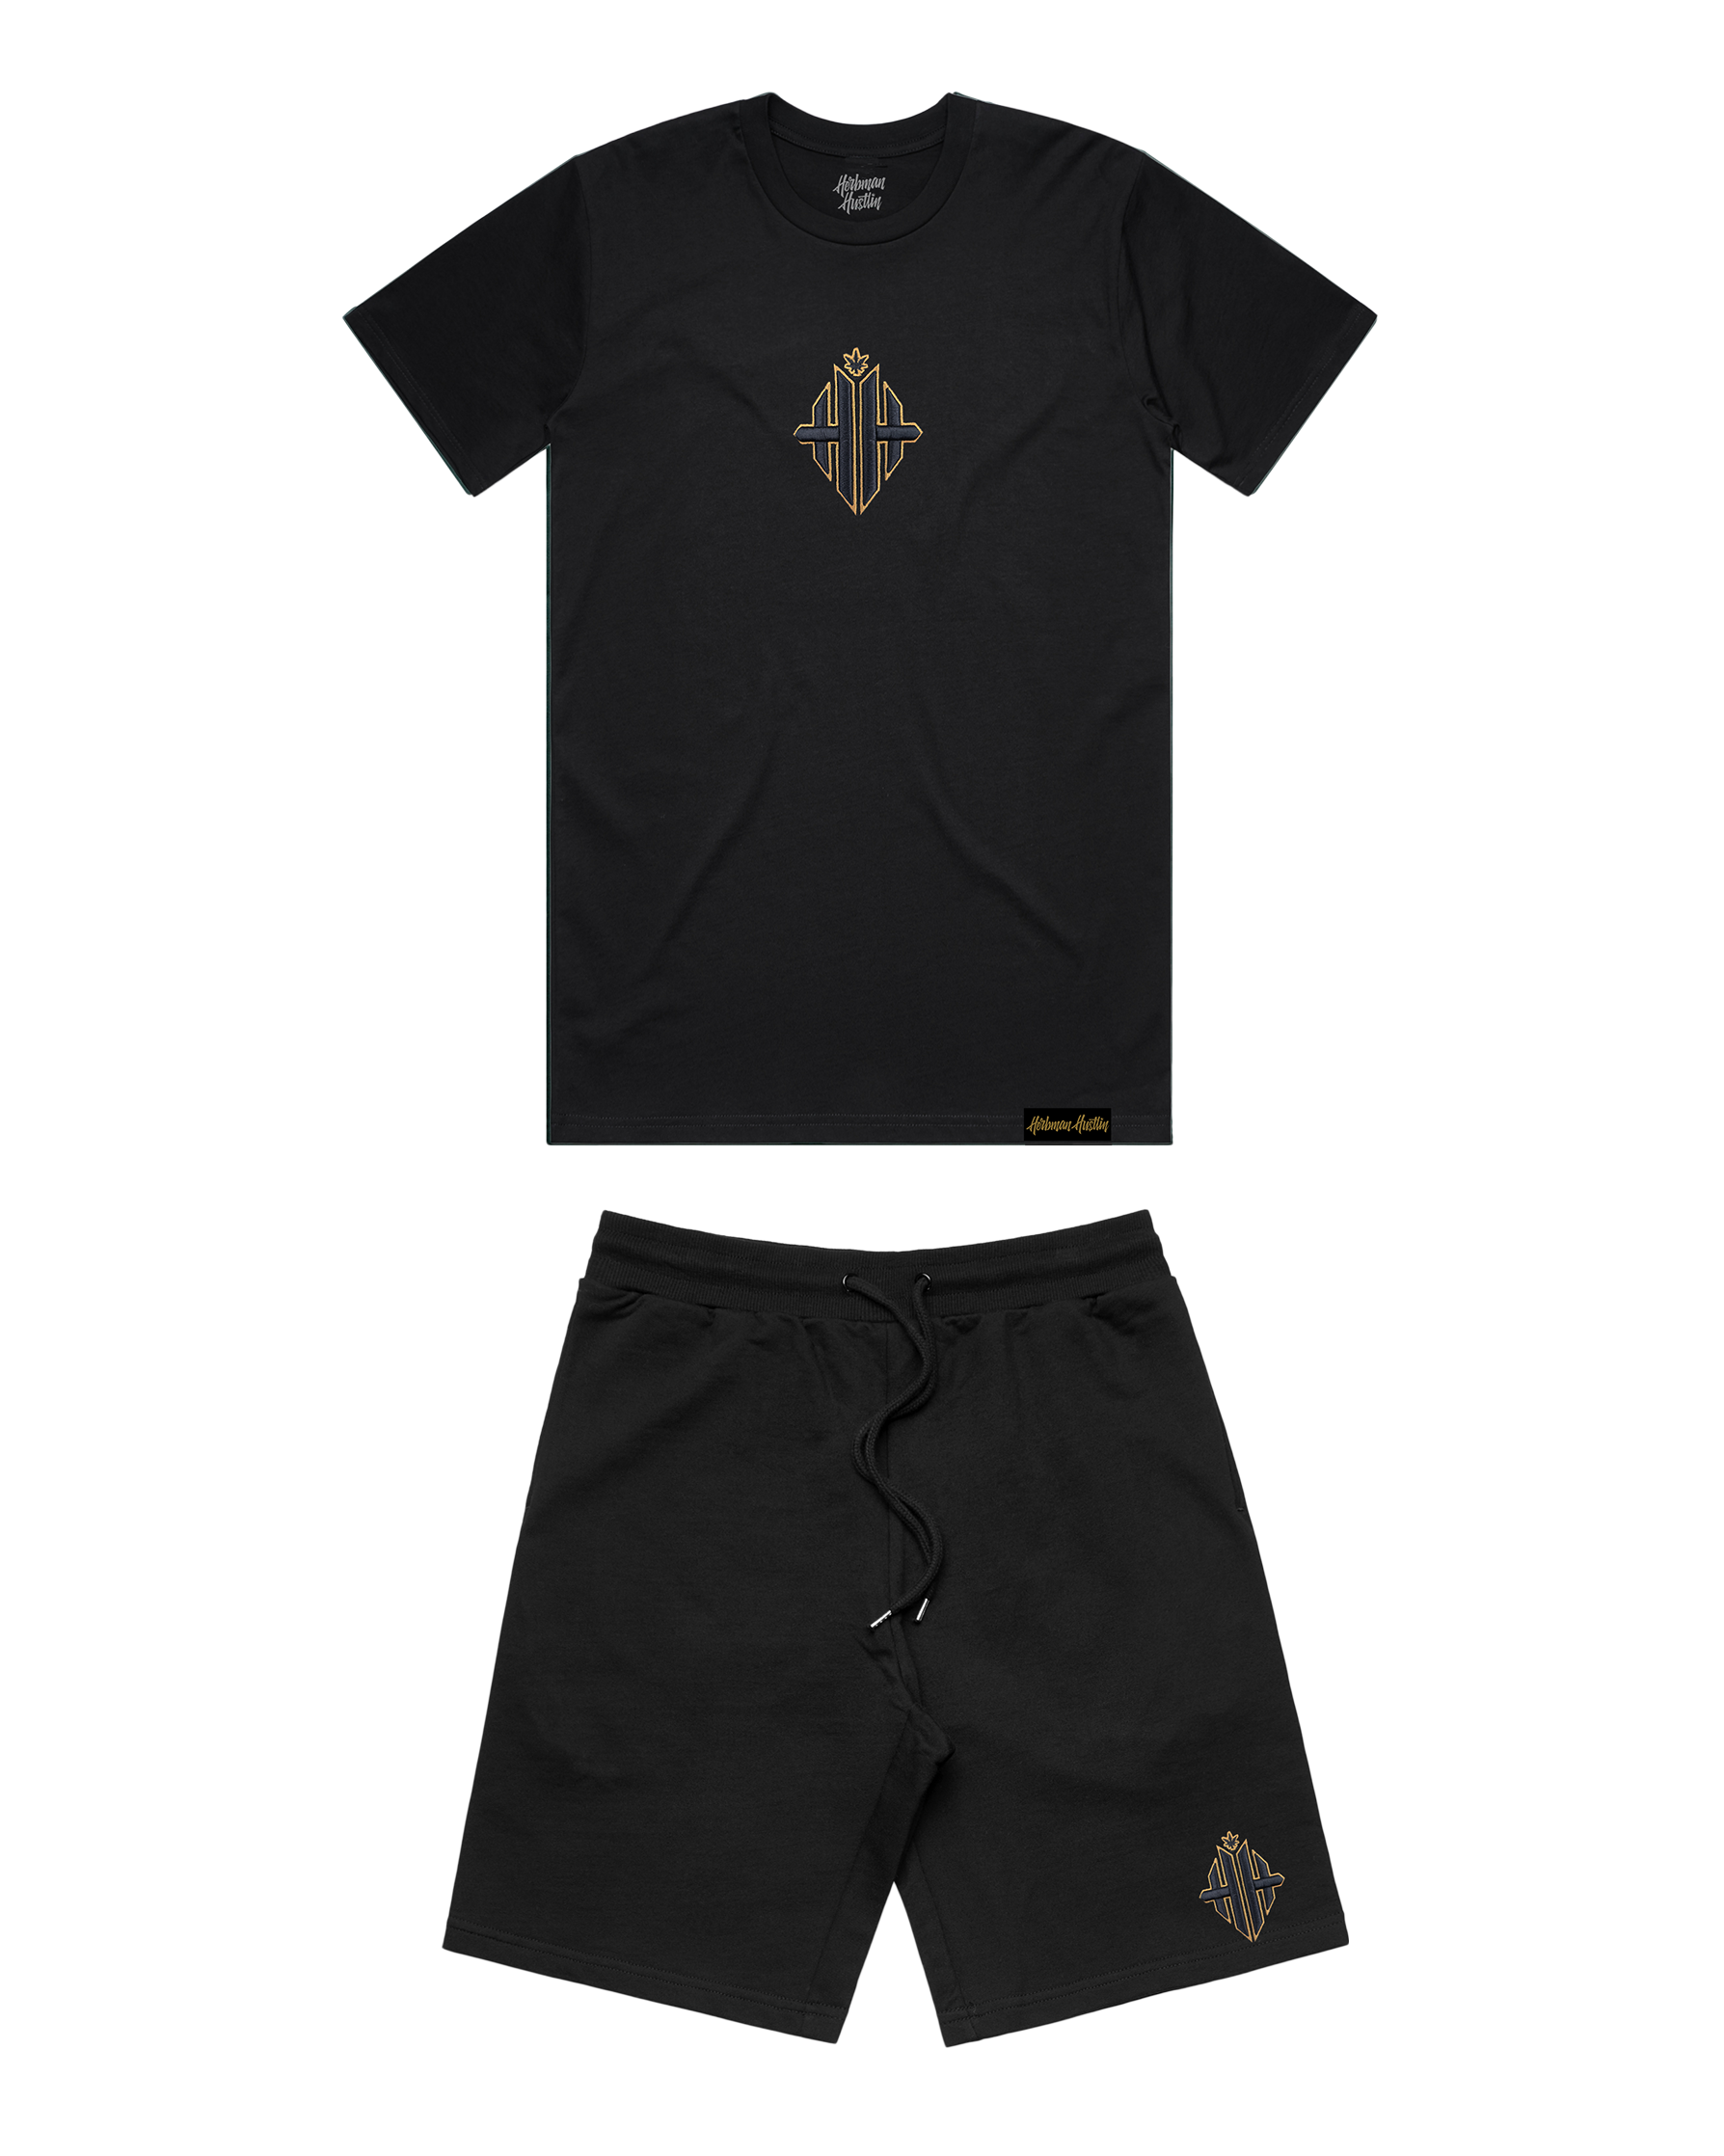 24k  Embroidered Monogram Shorts Set - Black/Gold